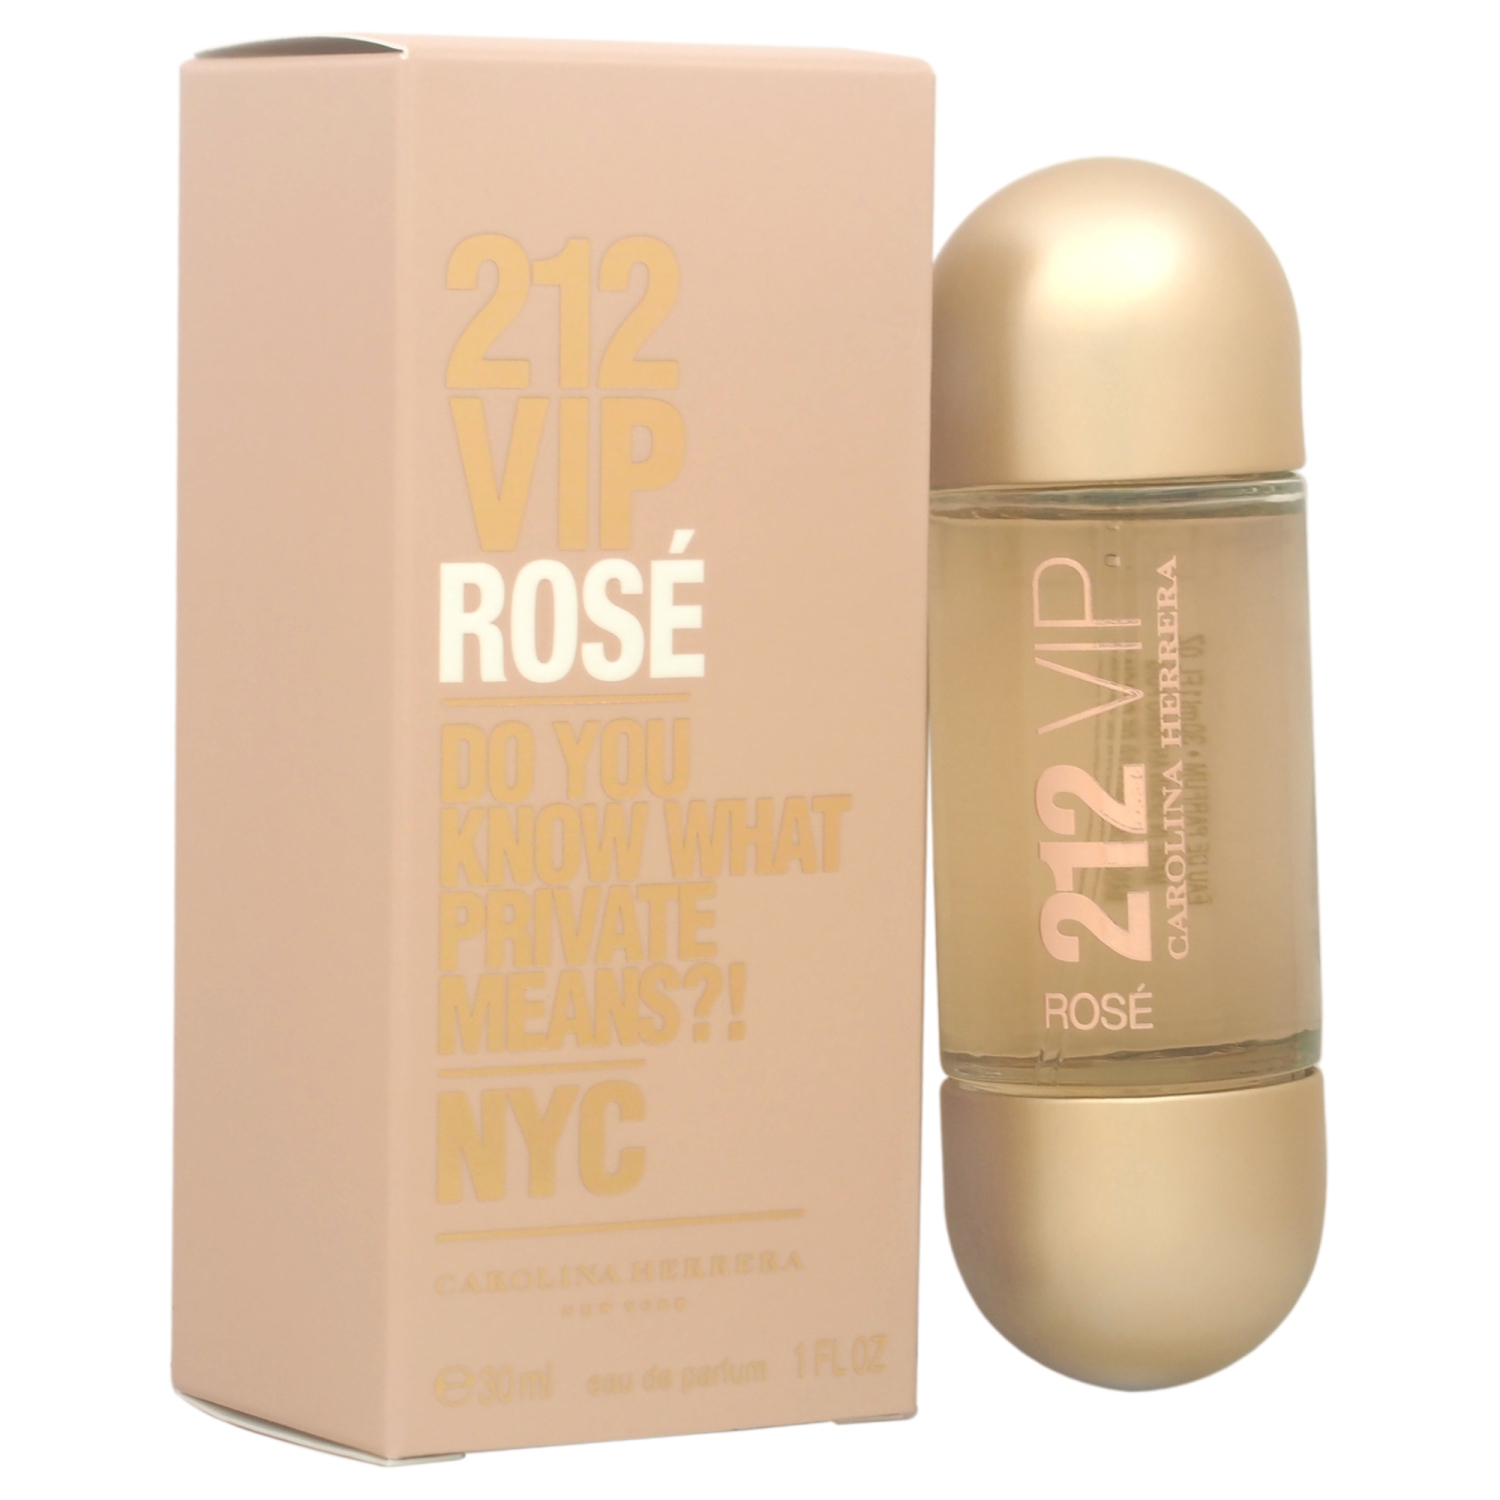 212 Vip Rose By Carolina Herrera Eau De Parfum Spray 1 Oz